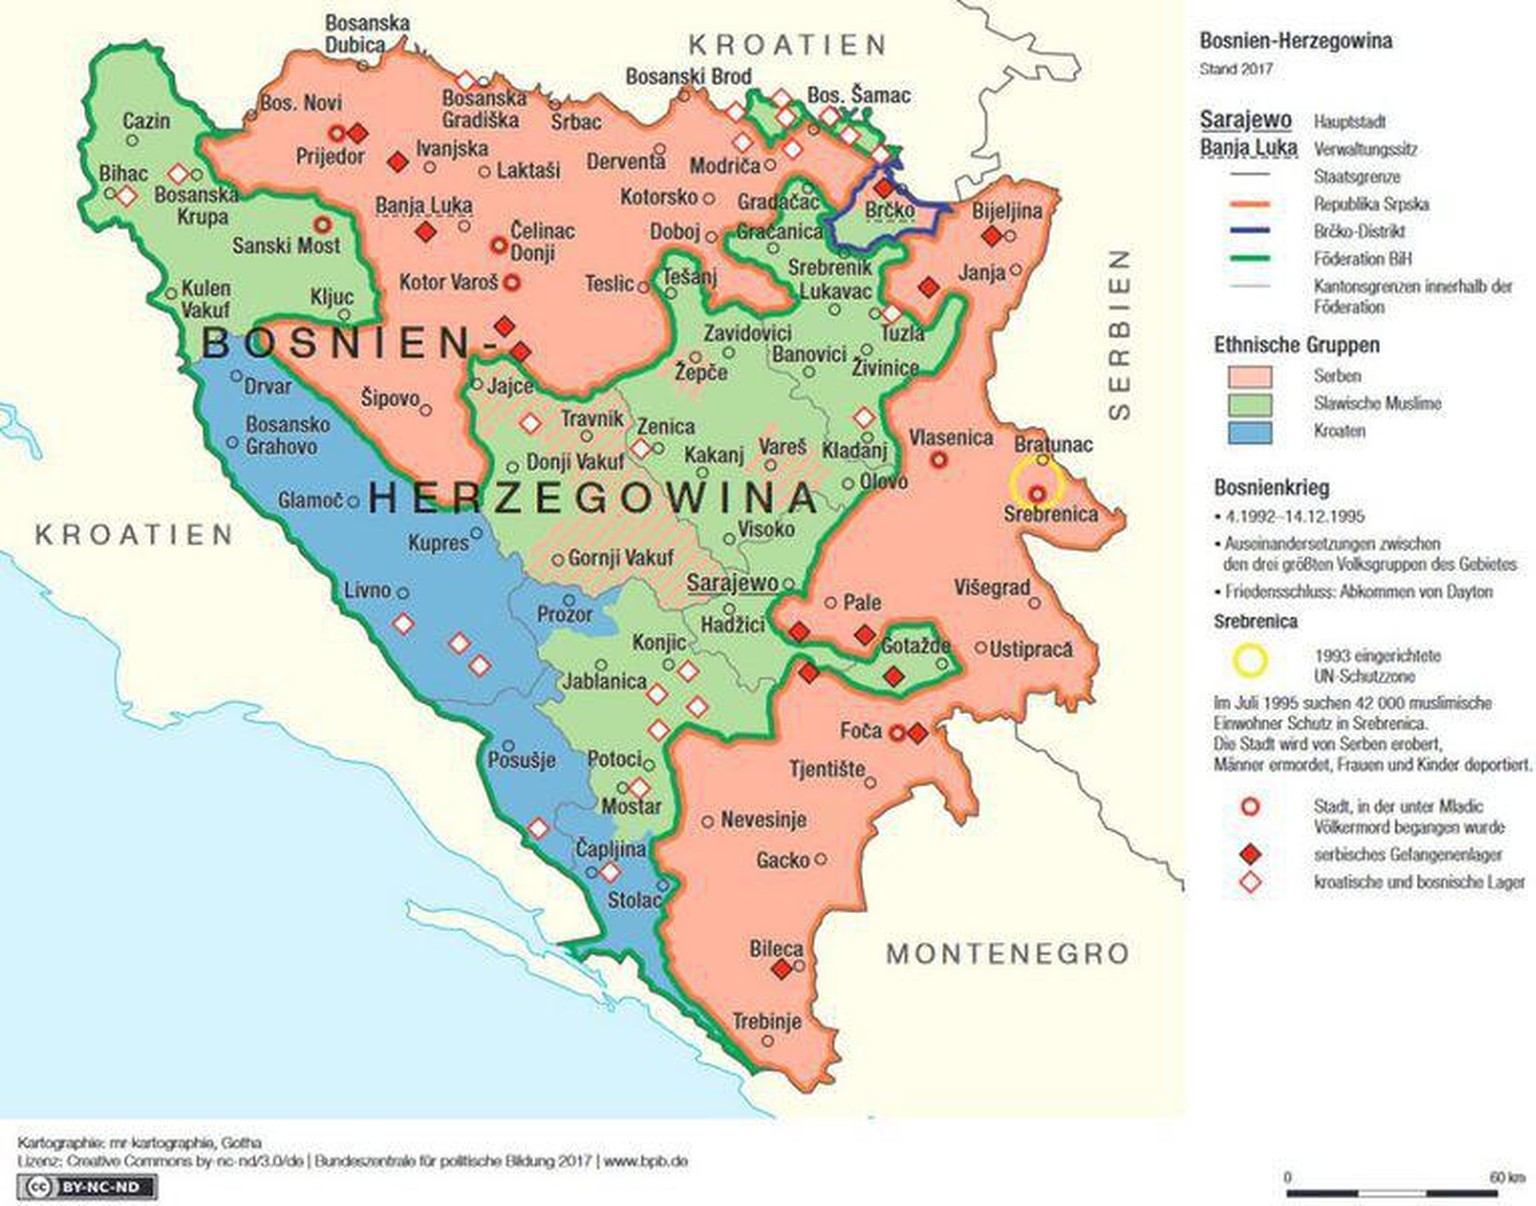 Ethnische Gruppen in Bosnien-Herzegowina, Stand 2017.